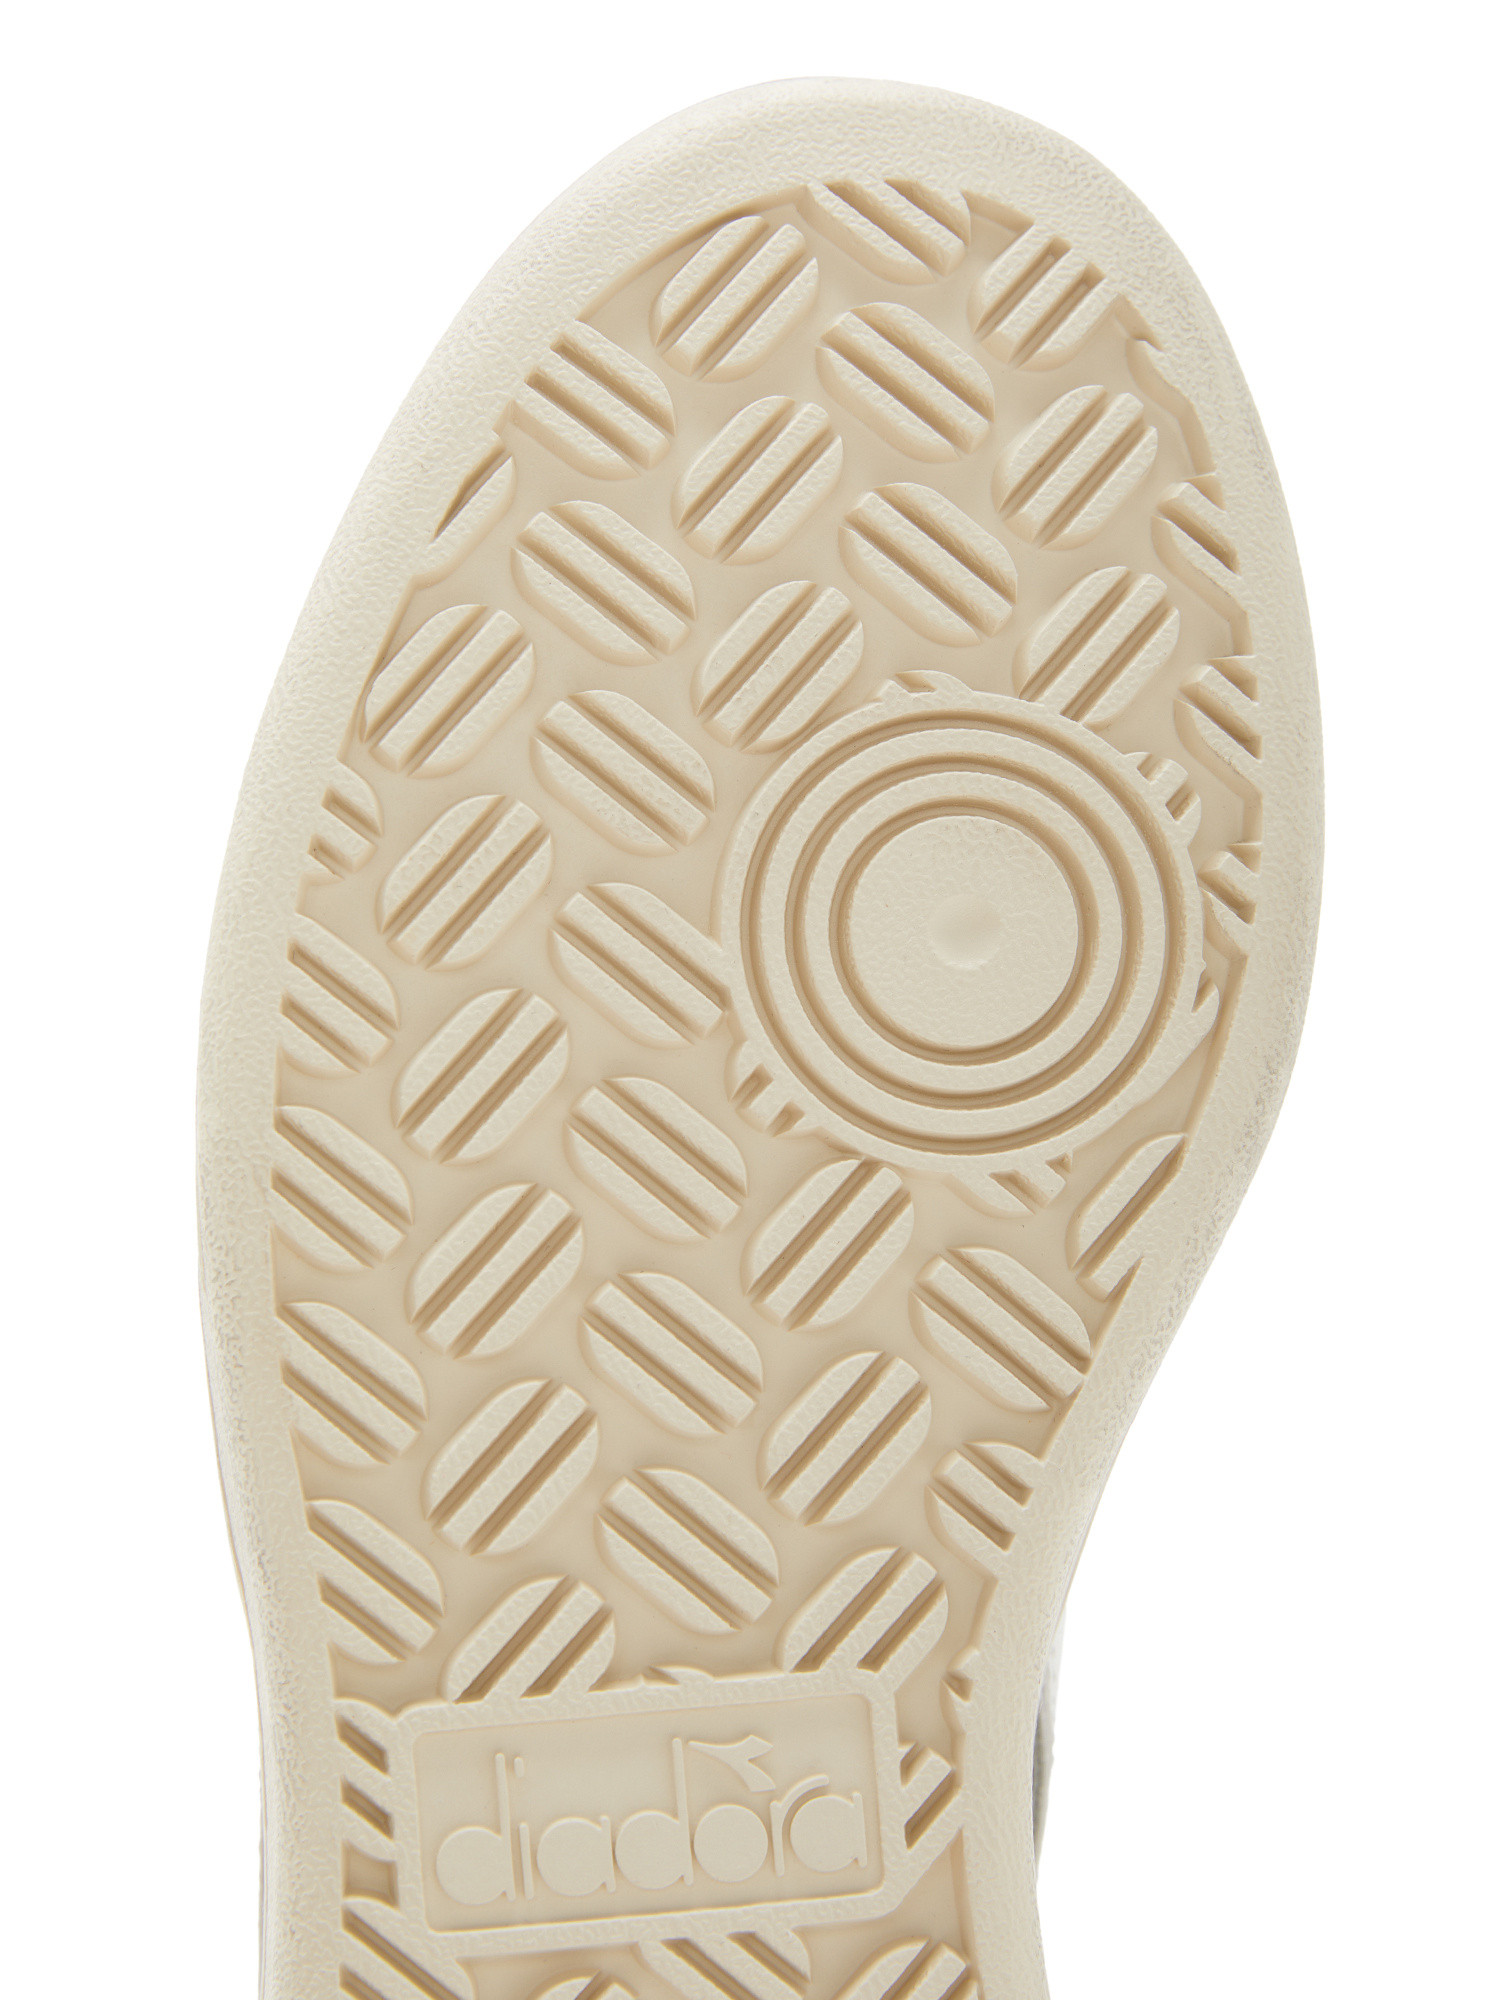 Diadora - Shoes Magic Basket Low Icon Wn, Grey, large image number 5